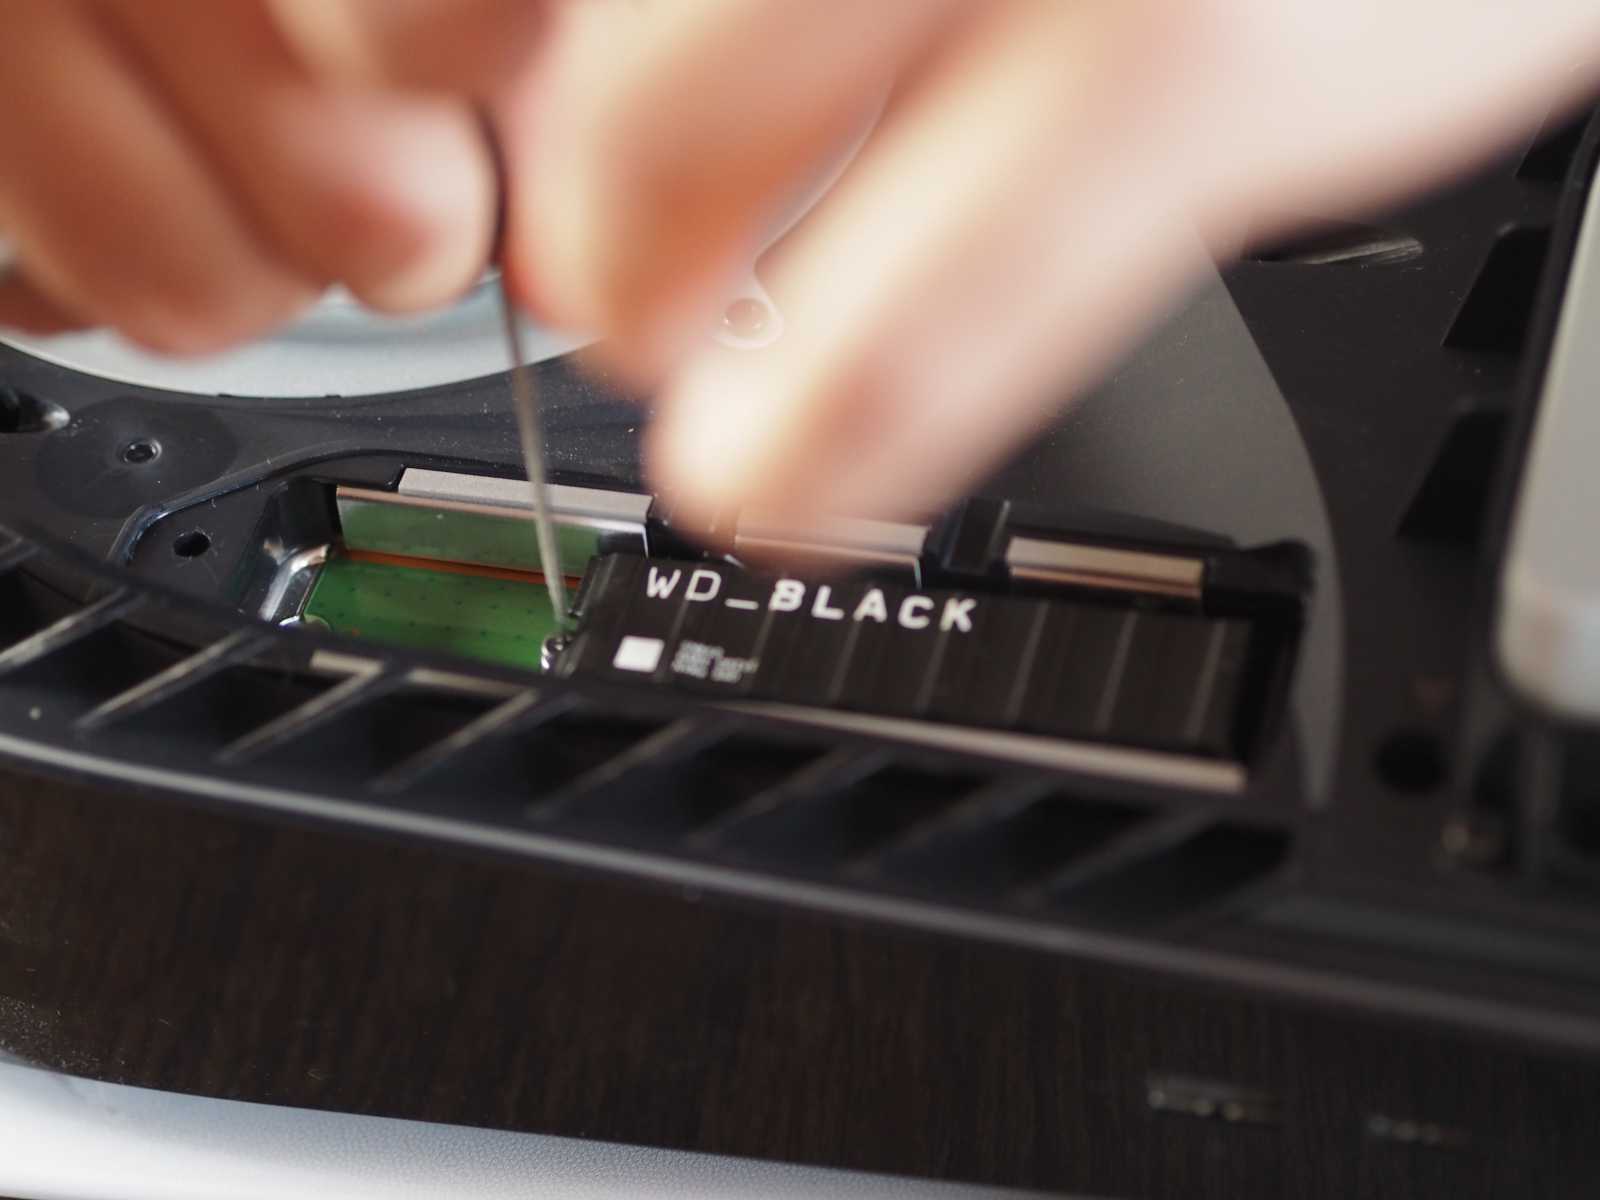 Recenze WD_BLACK SN850, disku, který plnohodnotně doplní váš PlayStation 5